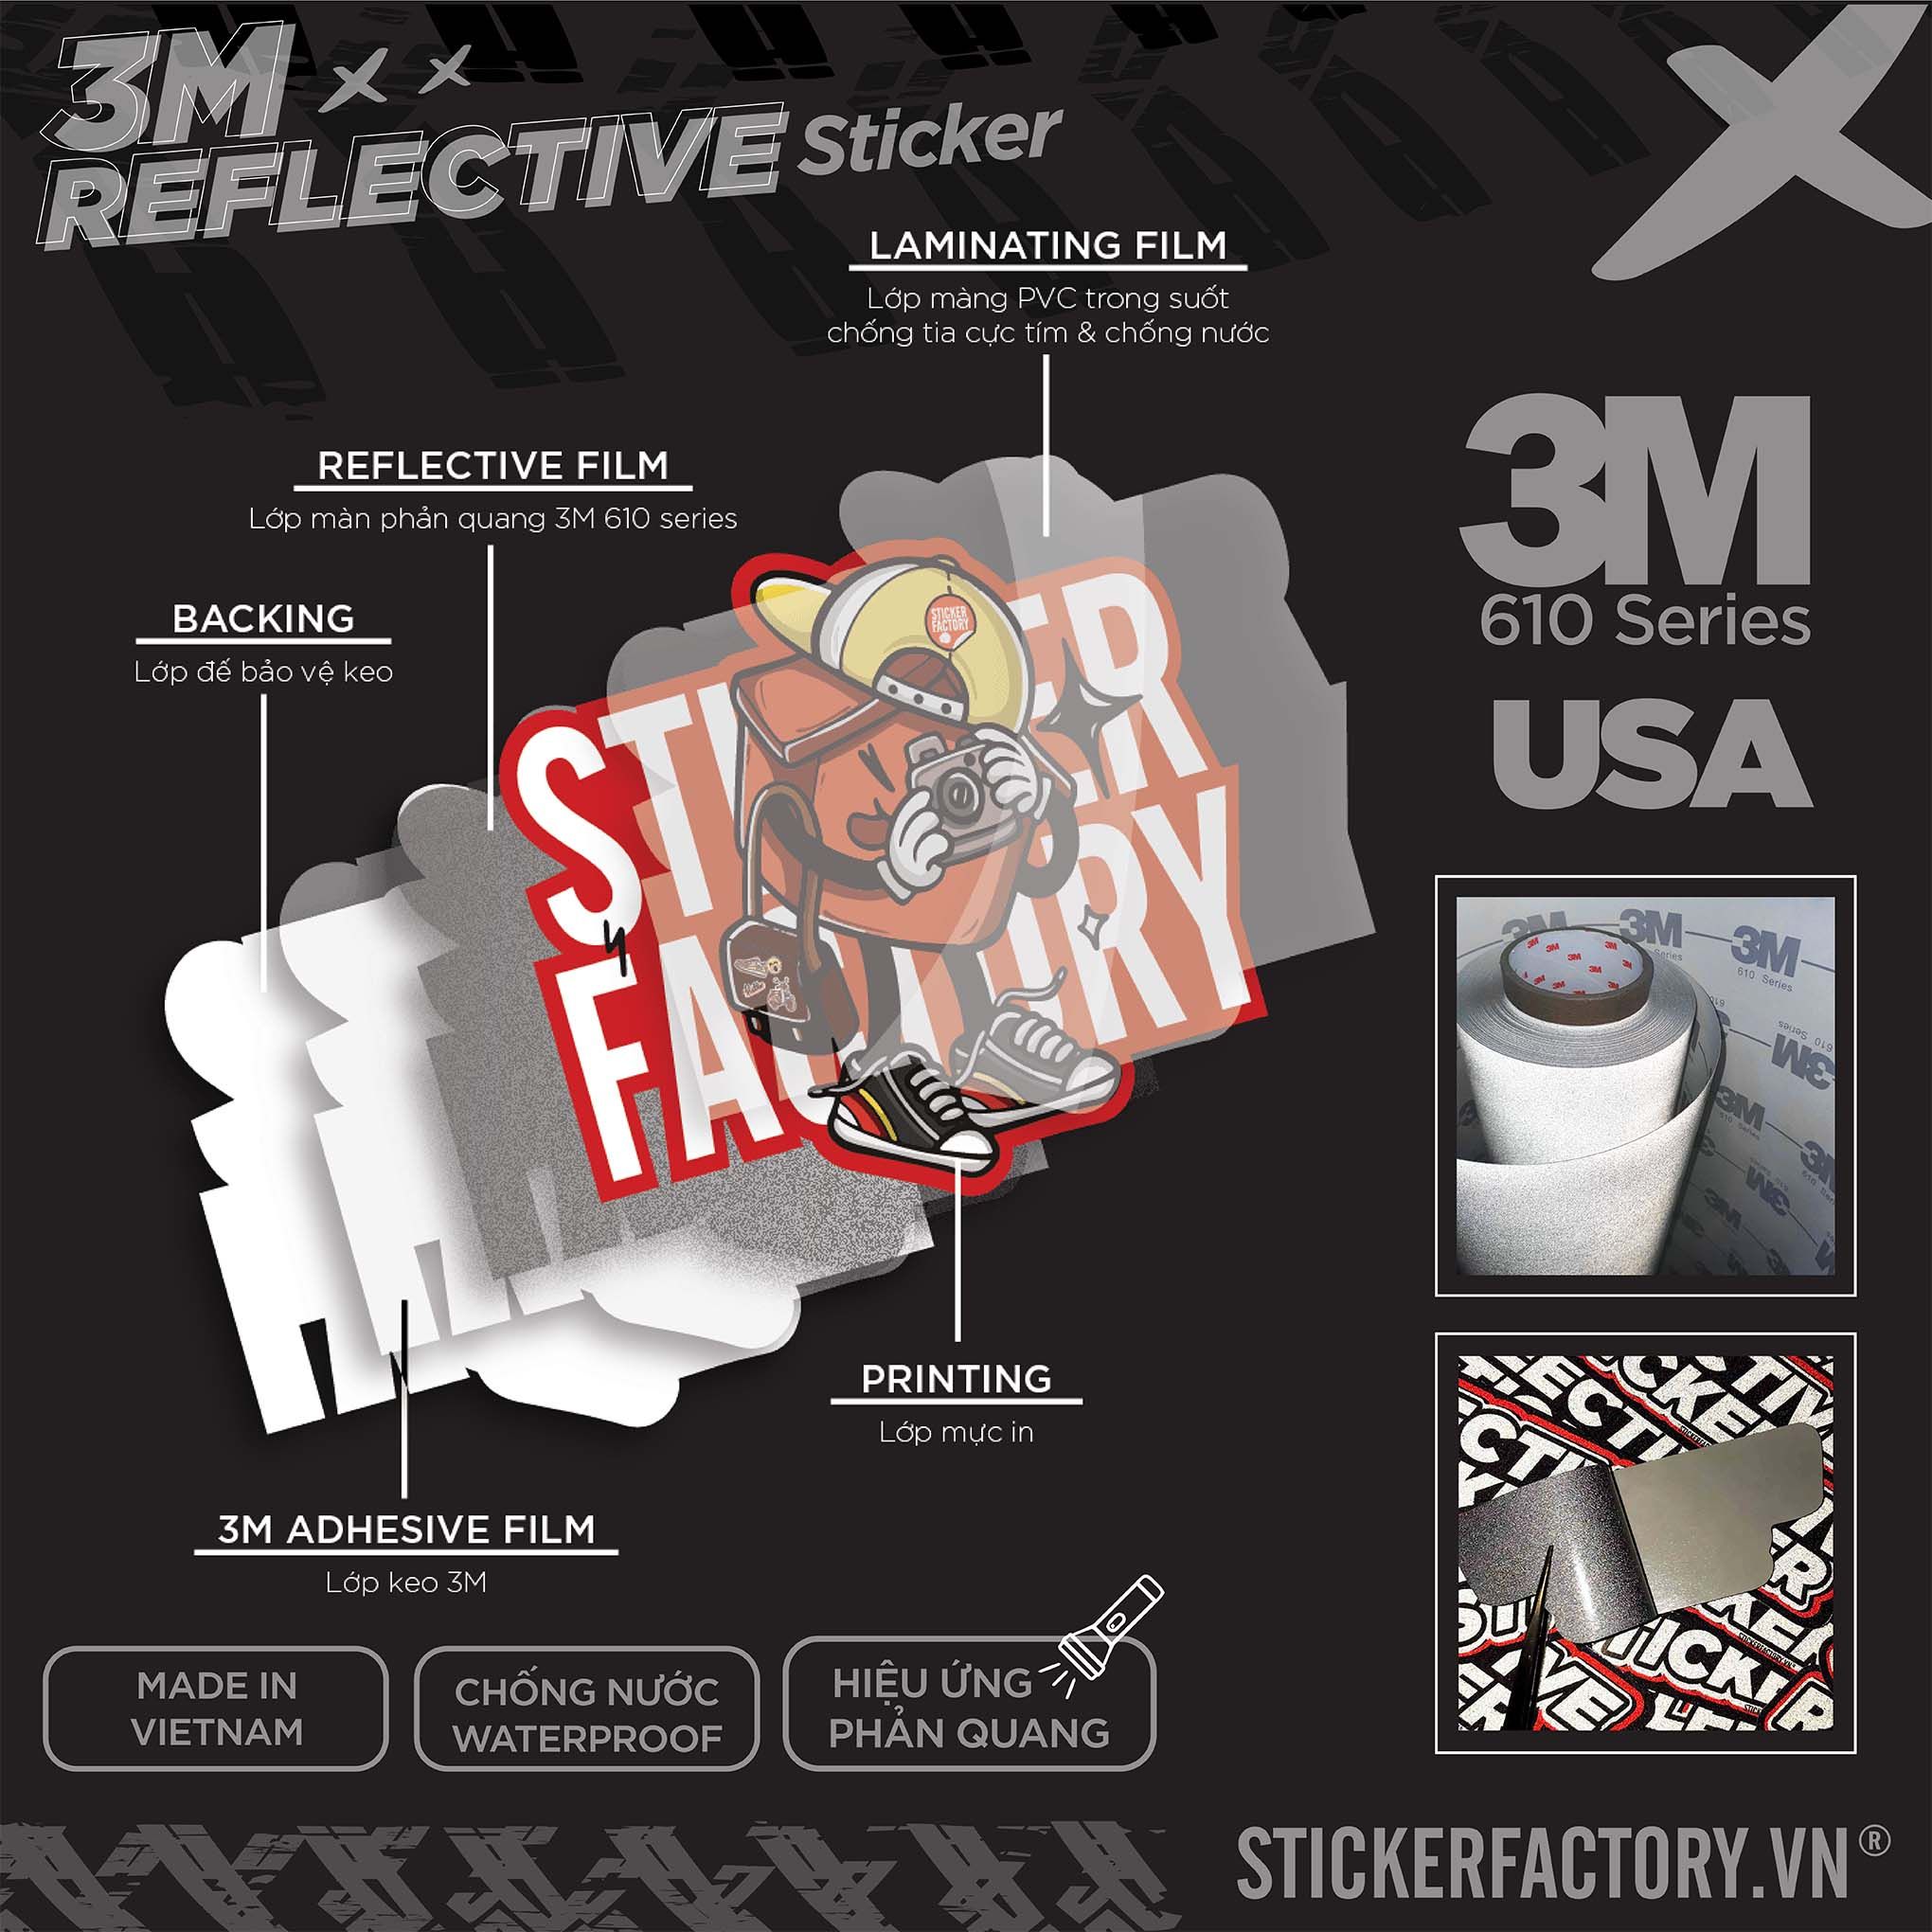 ASTRONAUT IN A BOTTLE 3M - Reflective Sticker Die-cut